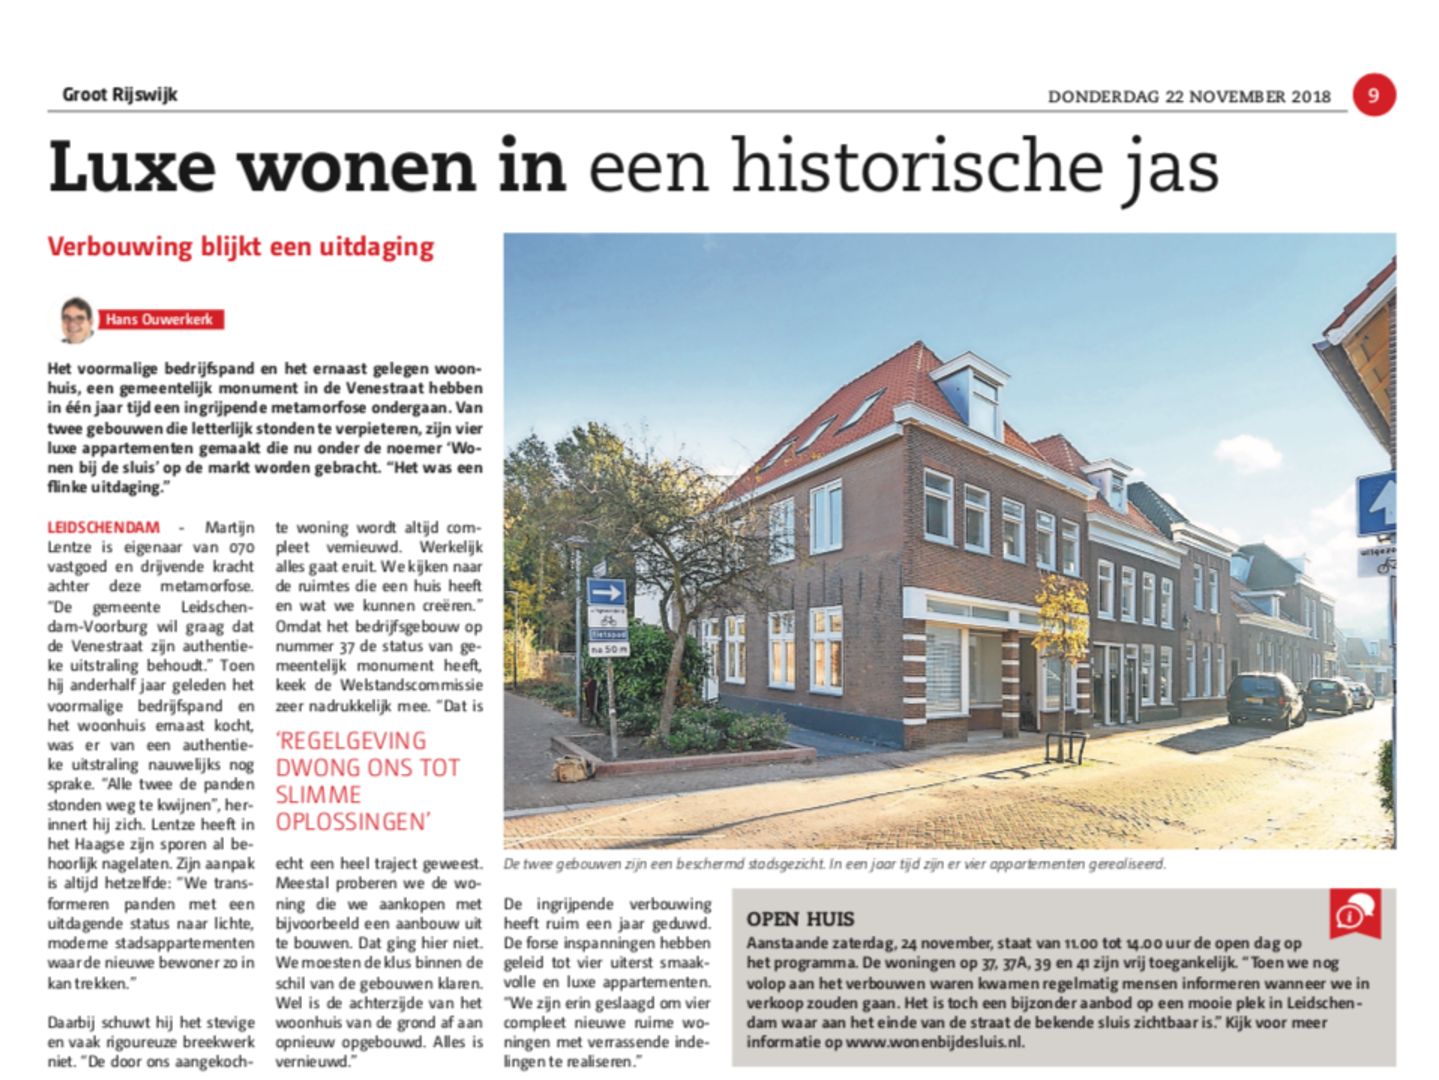 070 Vastgoed presenteert Project Venestraat Leidschendam in Groot Rijswijk: Luxe wonen in een historische jas